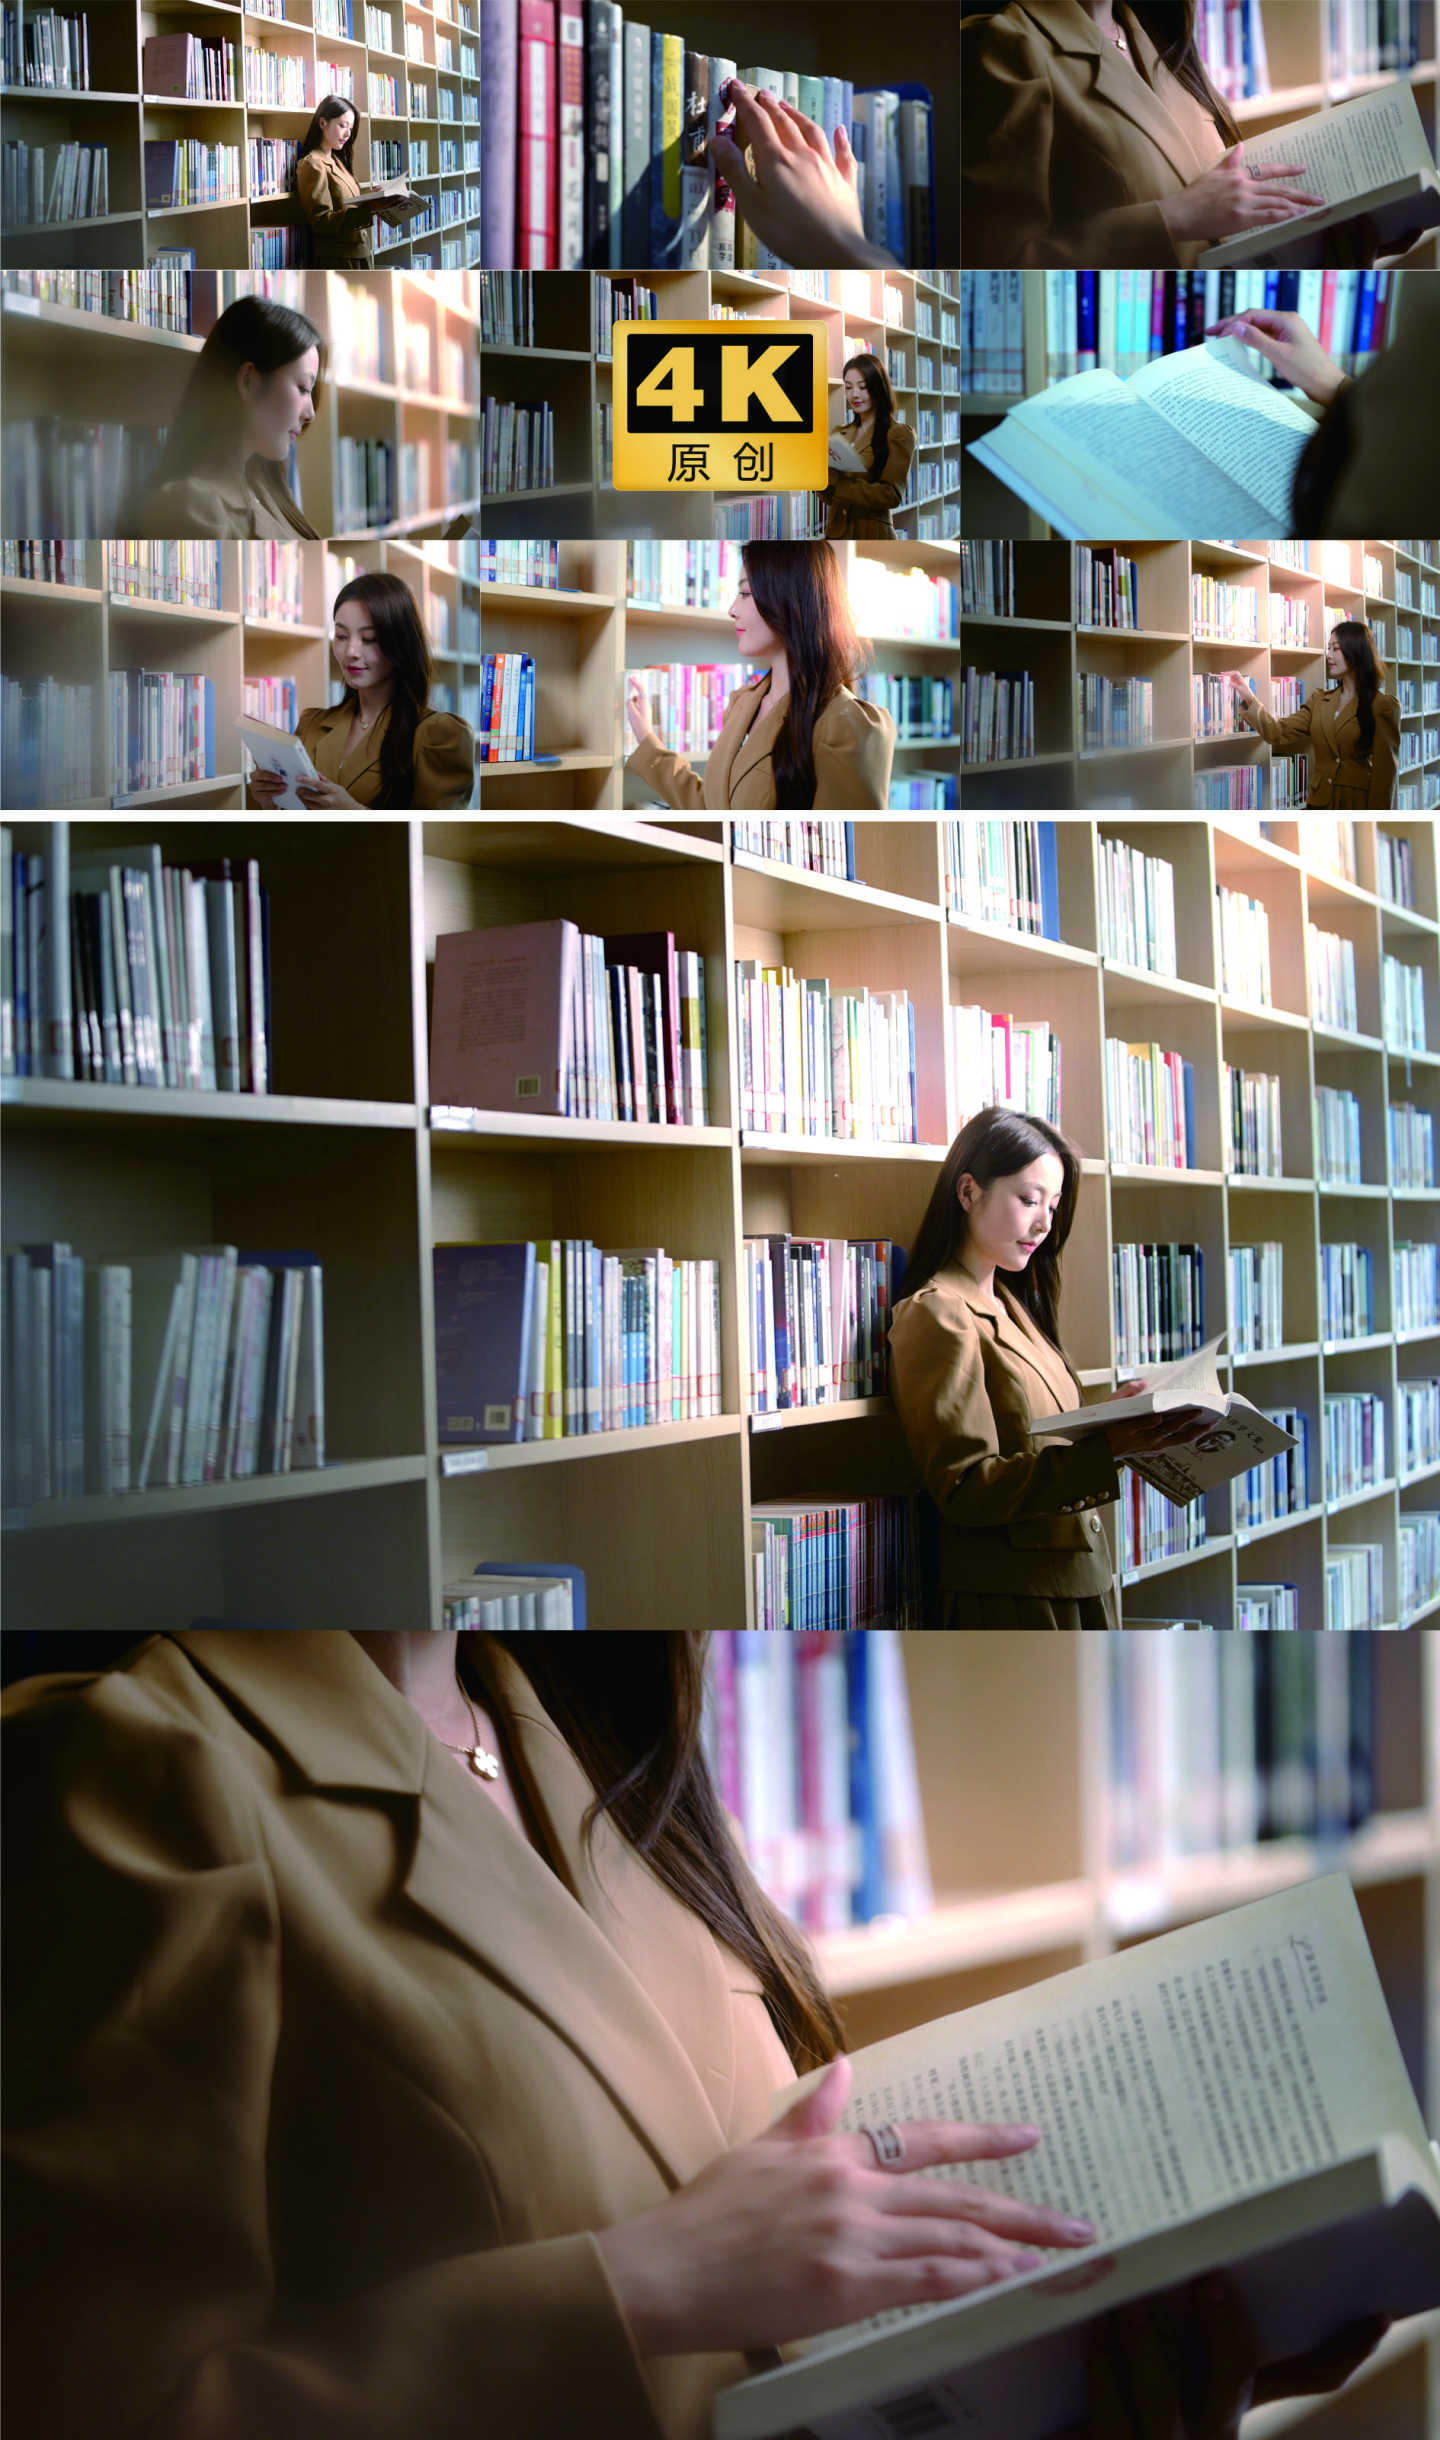 看书 读书 美女看书 图书馆看书